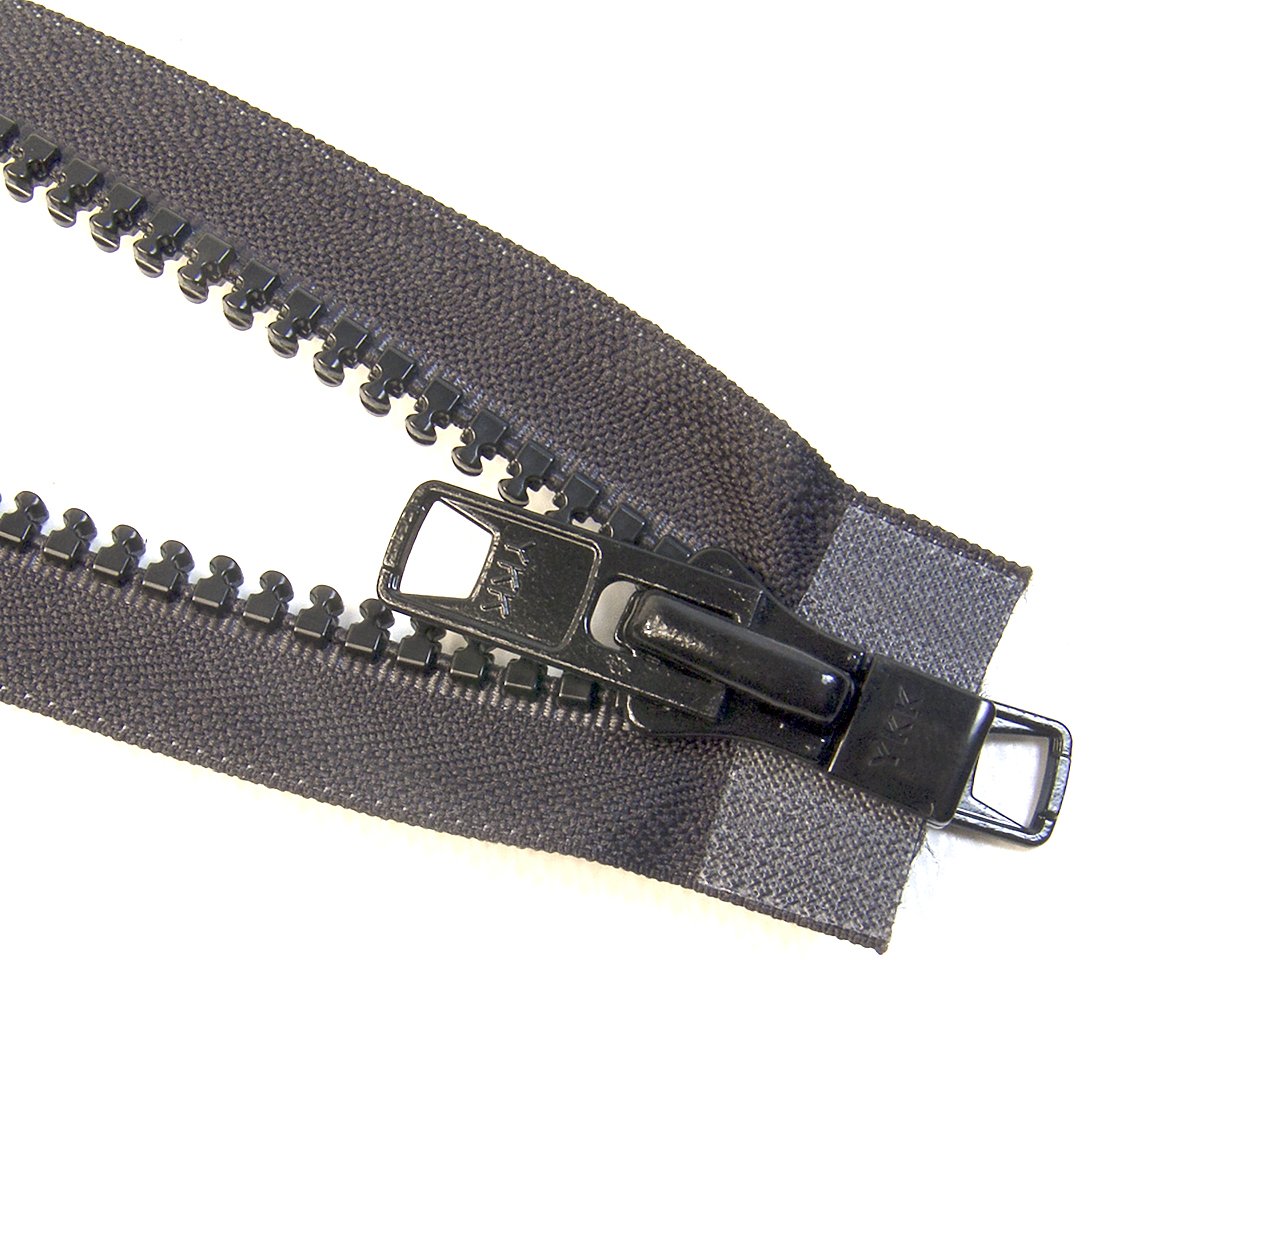 Black Zipper Heavy Duty Zipper 9 inch Metal Zipper Black 9” Metal Heavy  Duty Zippers Non Separating